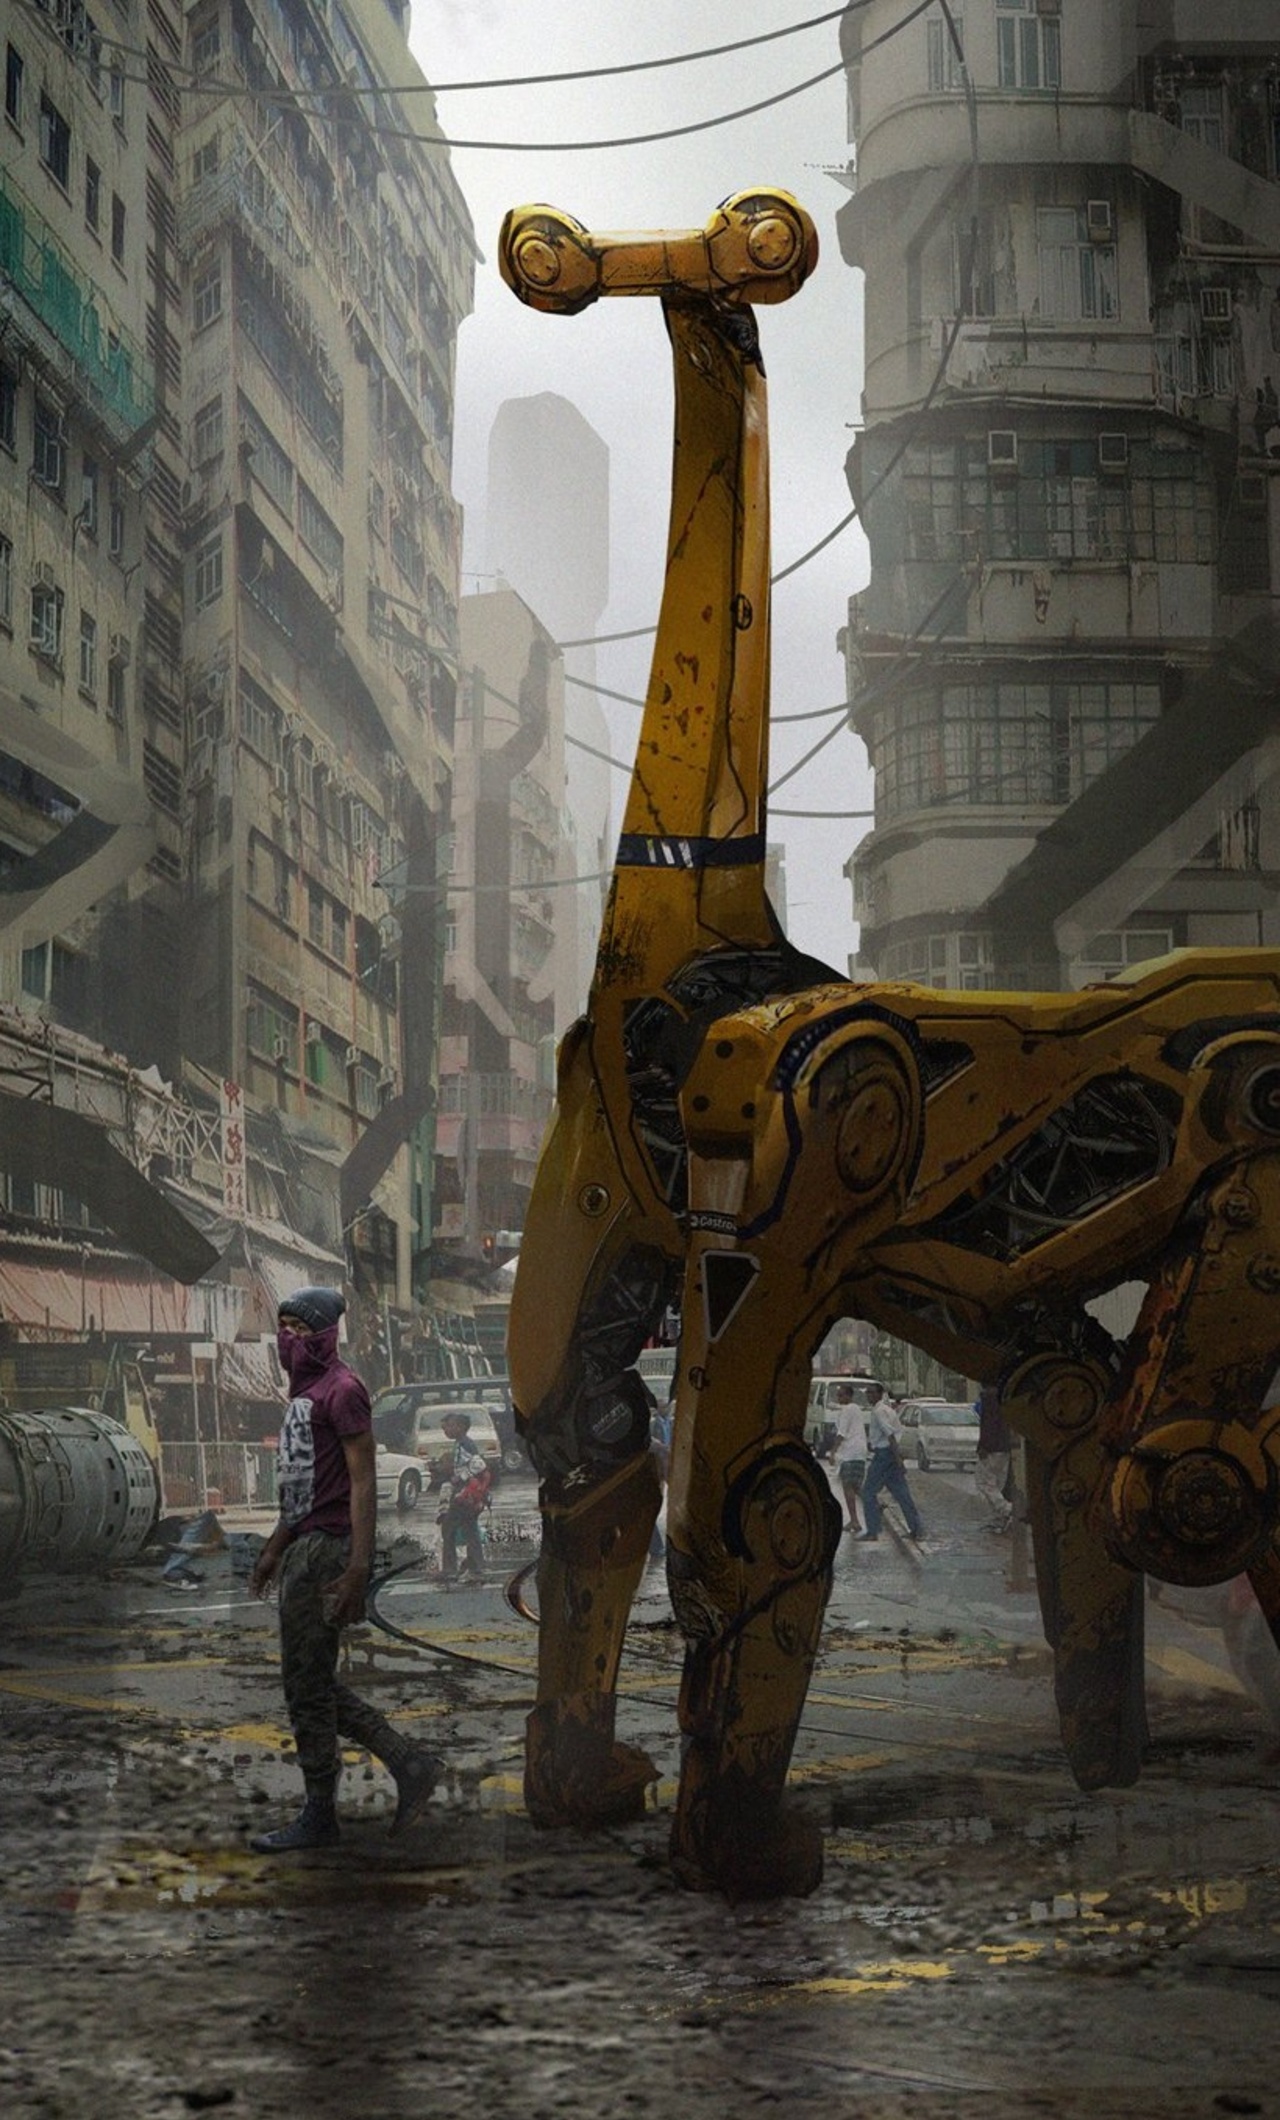 cyberpunk-city-giraffe-artwork-w2.jpg